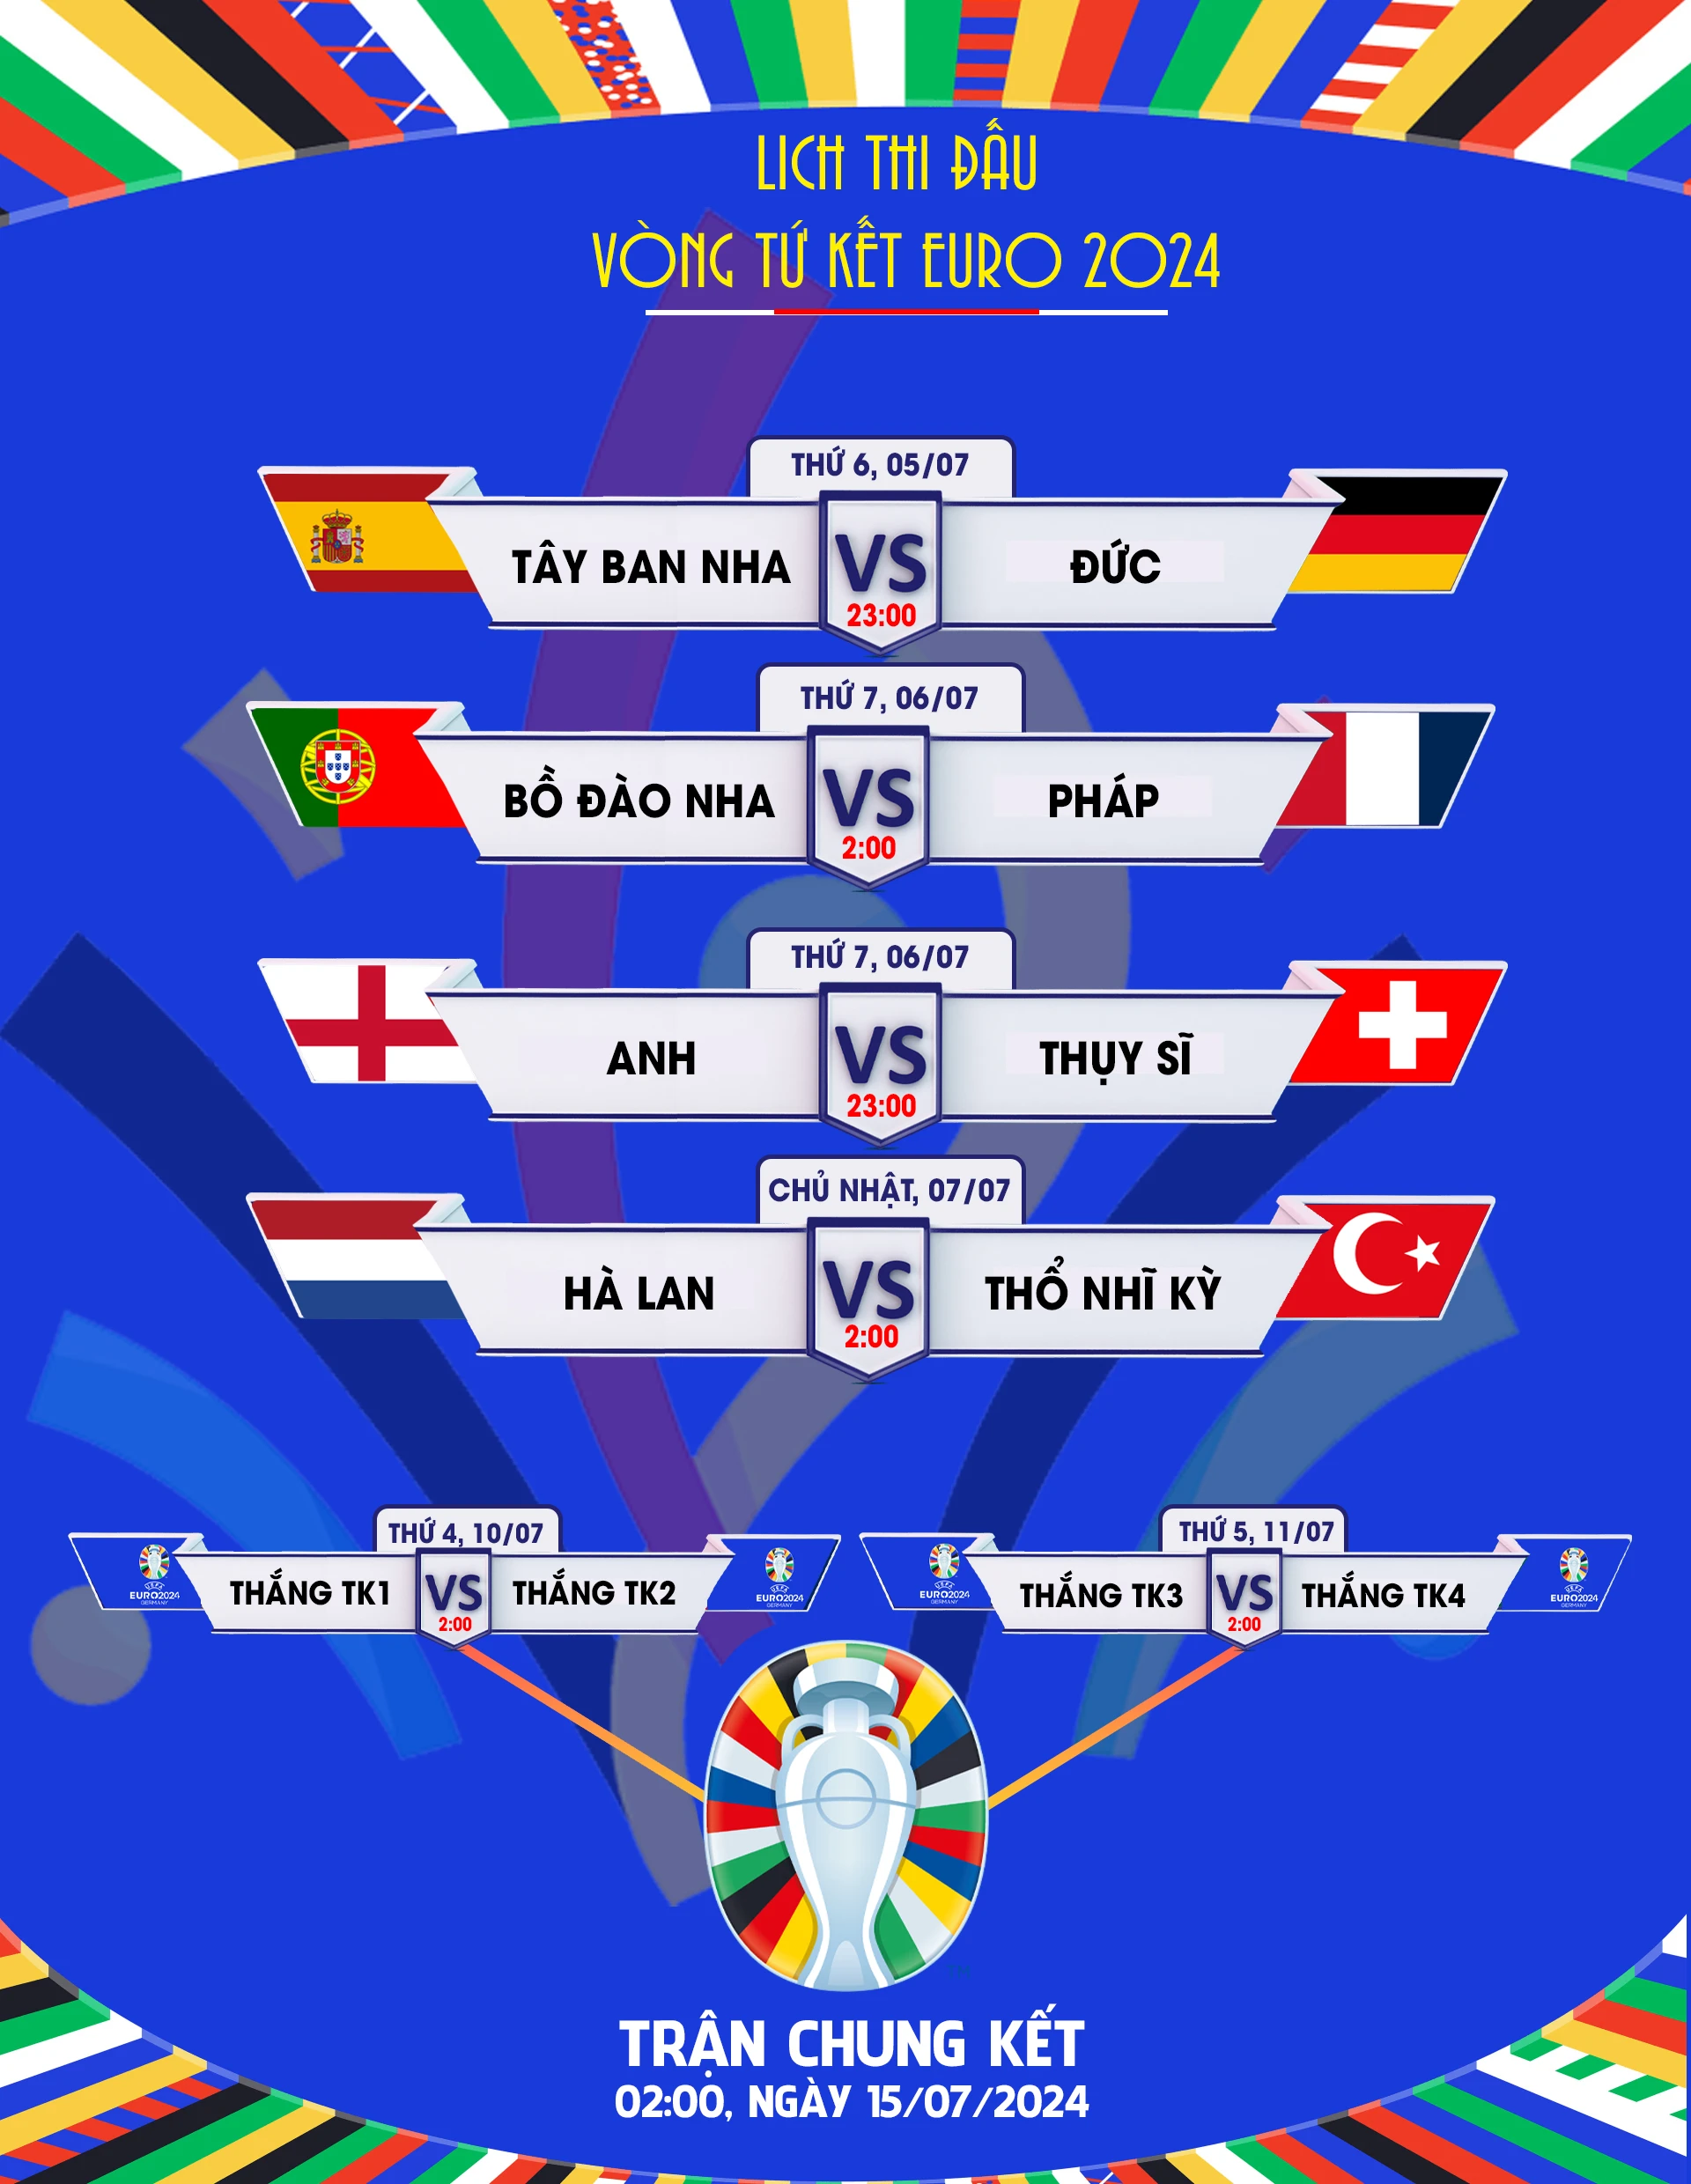 Lịch thi đấu vòng tứ kết EURO 2024: Đại chiến 8 đội mạnh ảnh 1